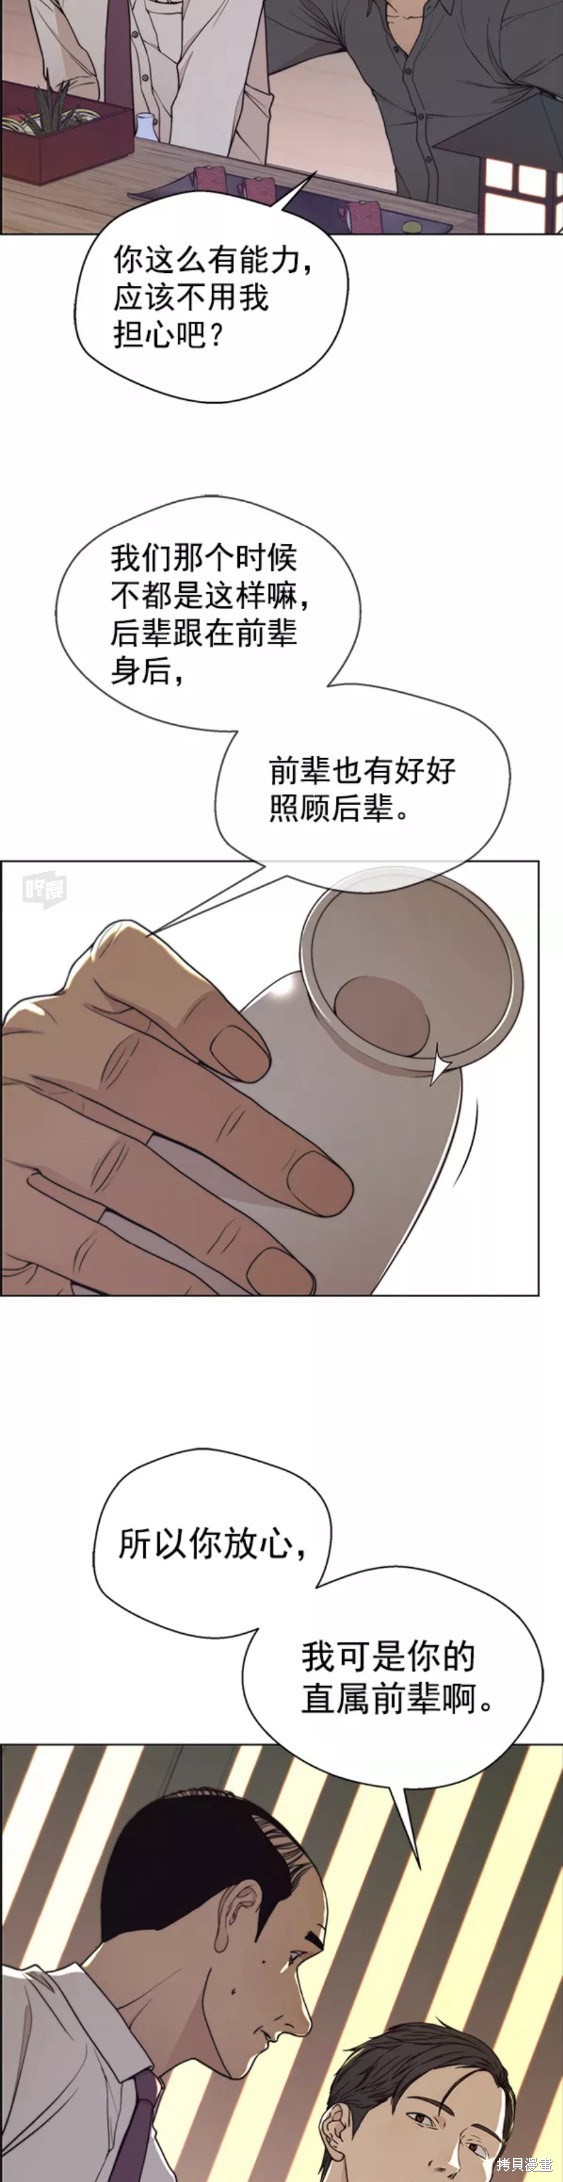 男子汉漫画,第89话6图